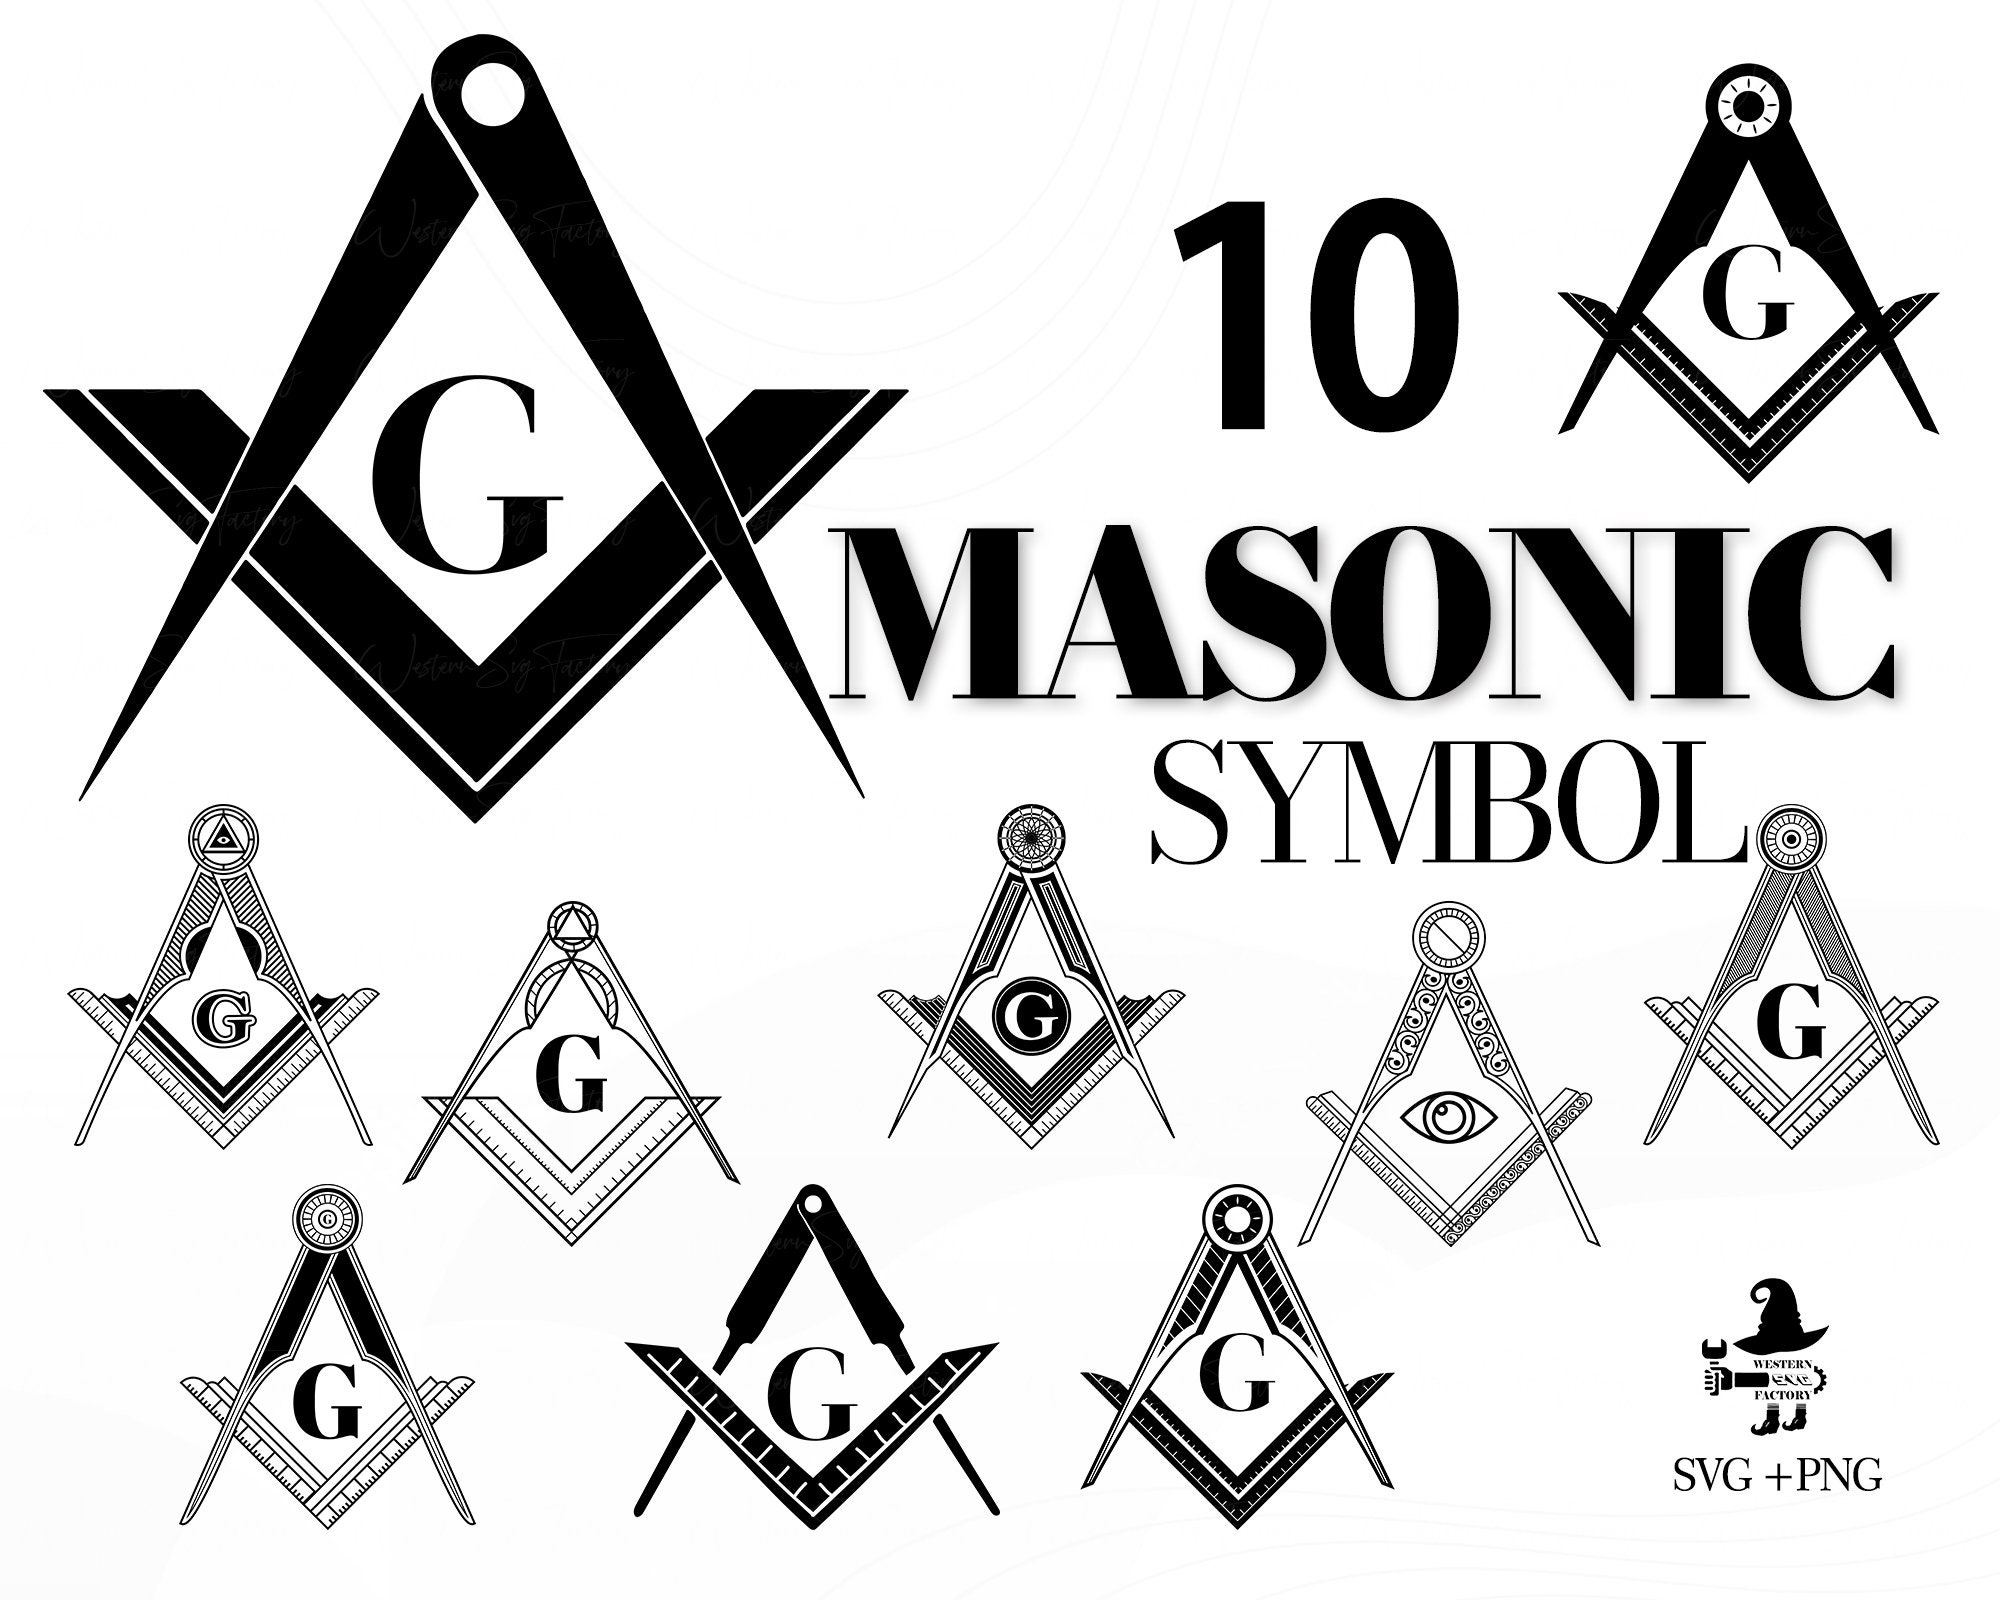 Masonic Symbols In Logos